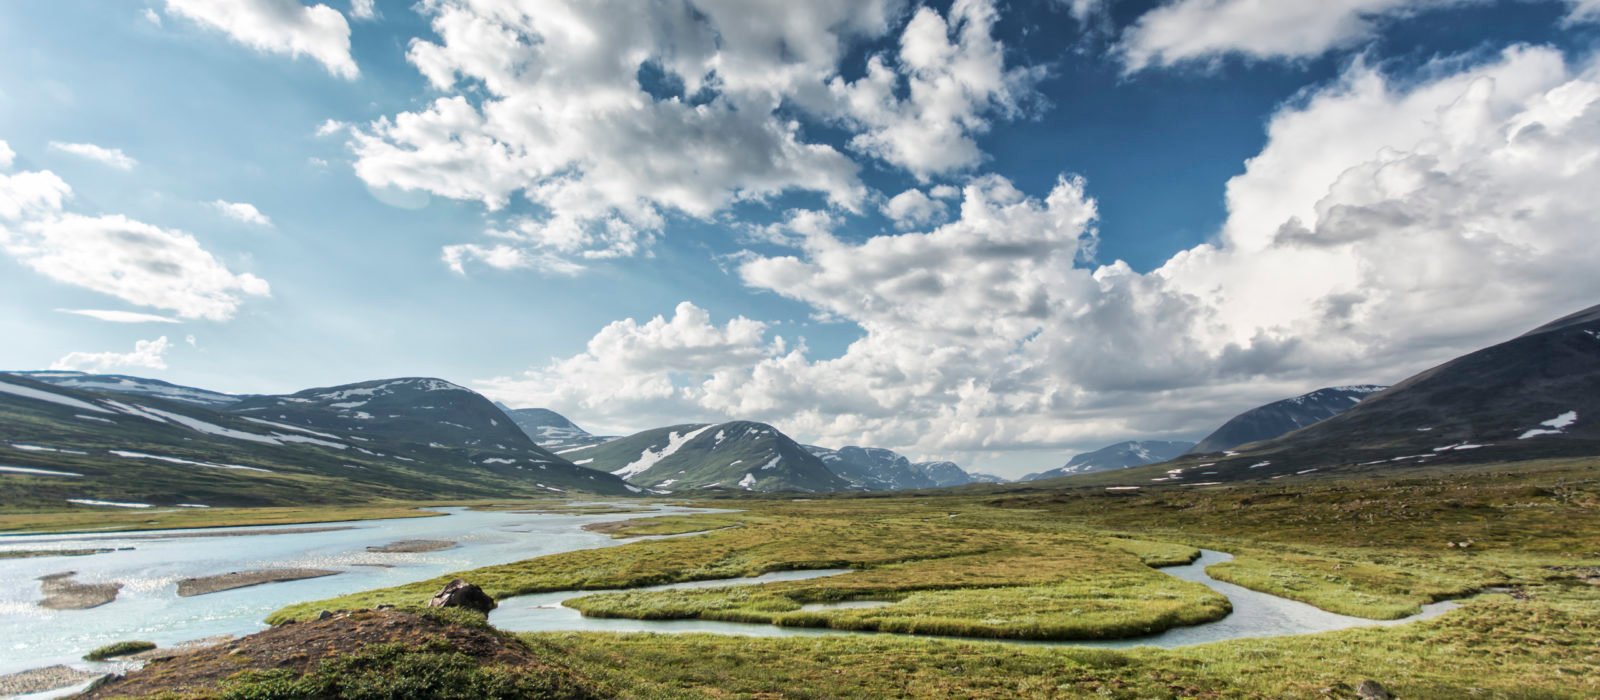 Swedish-Lapland-landscape